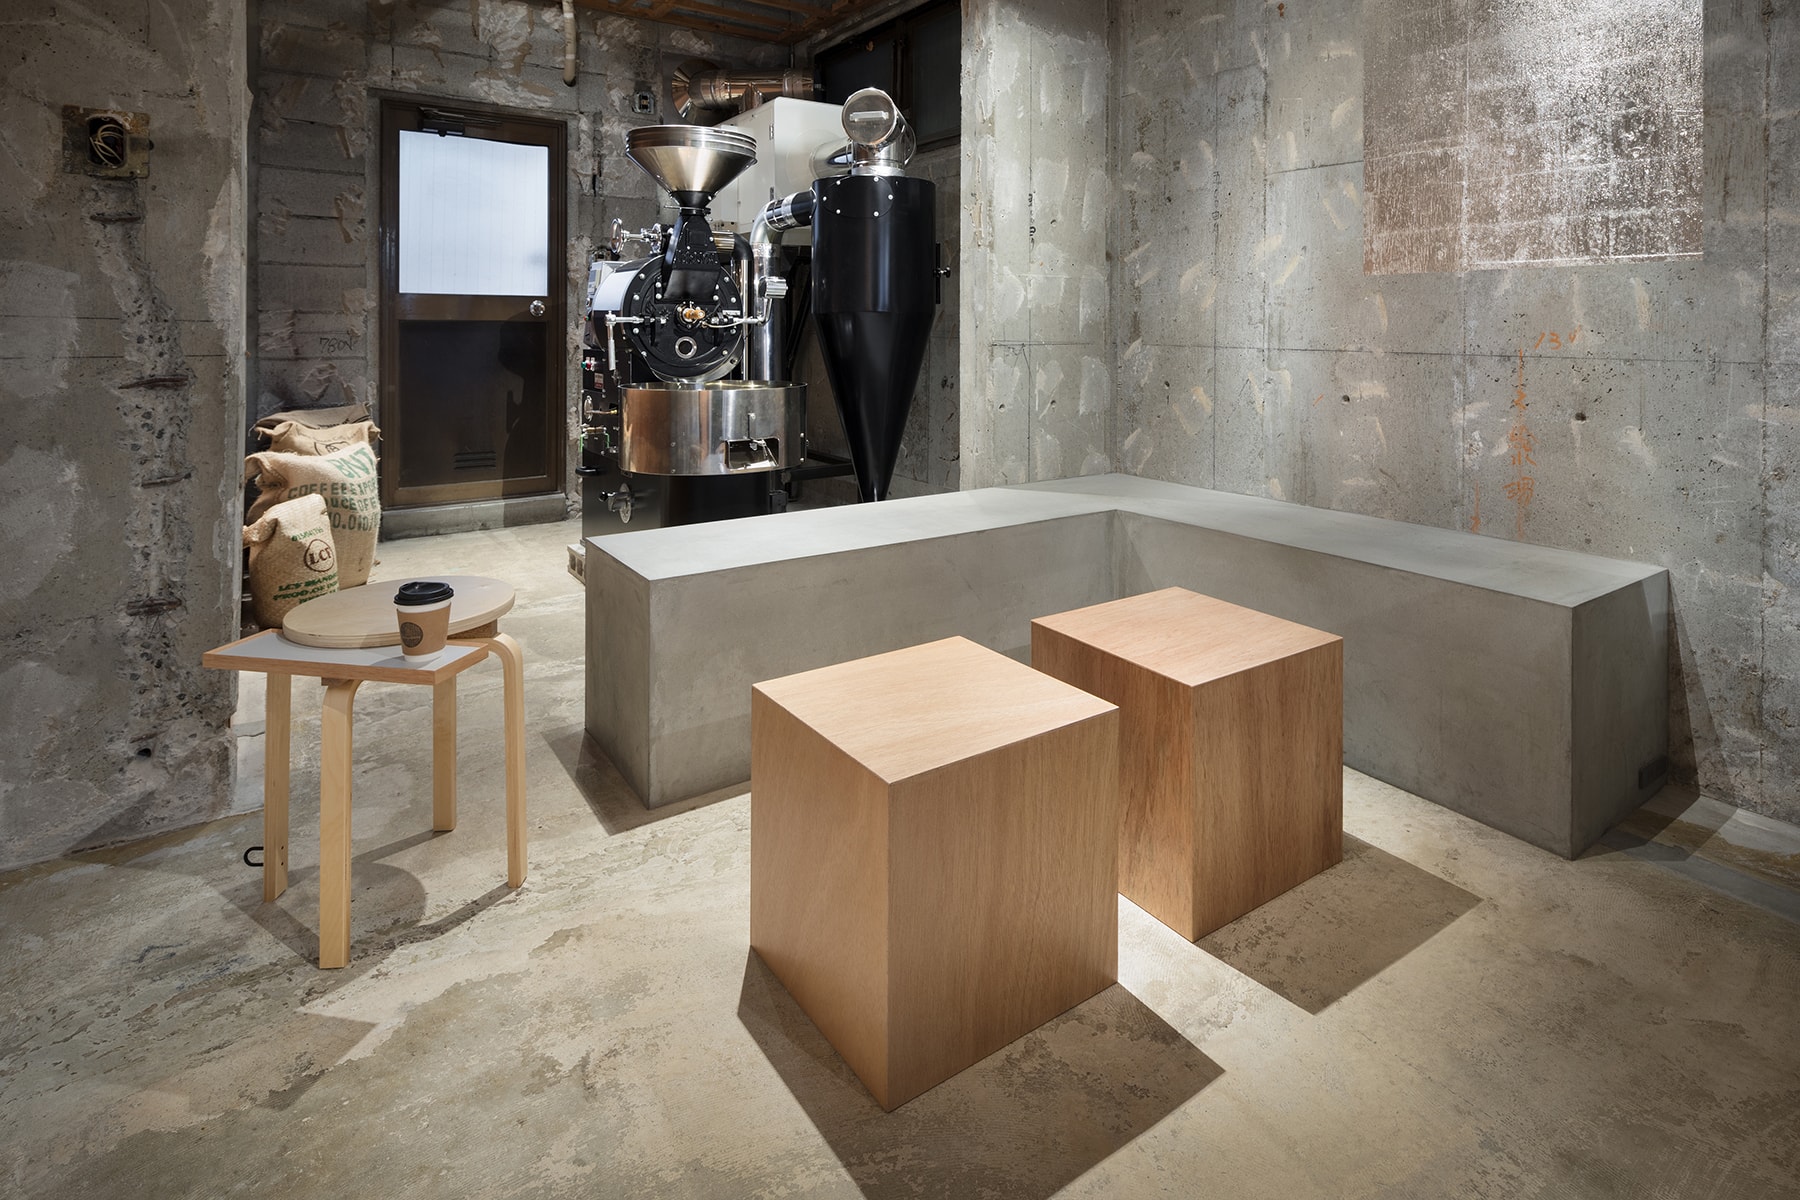 東京 Yusuke Seki 工作室改造 Voice of Coffe 咖啡馆